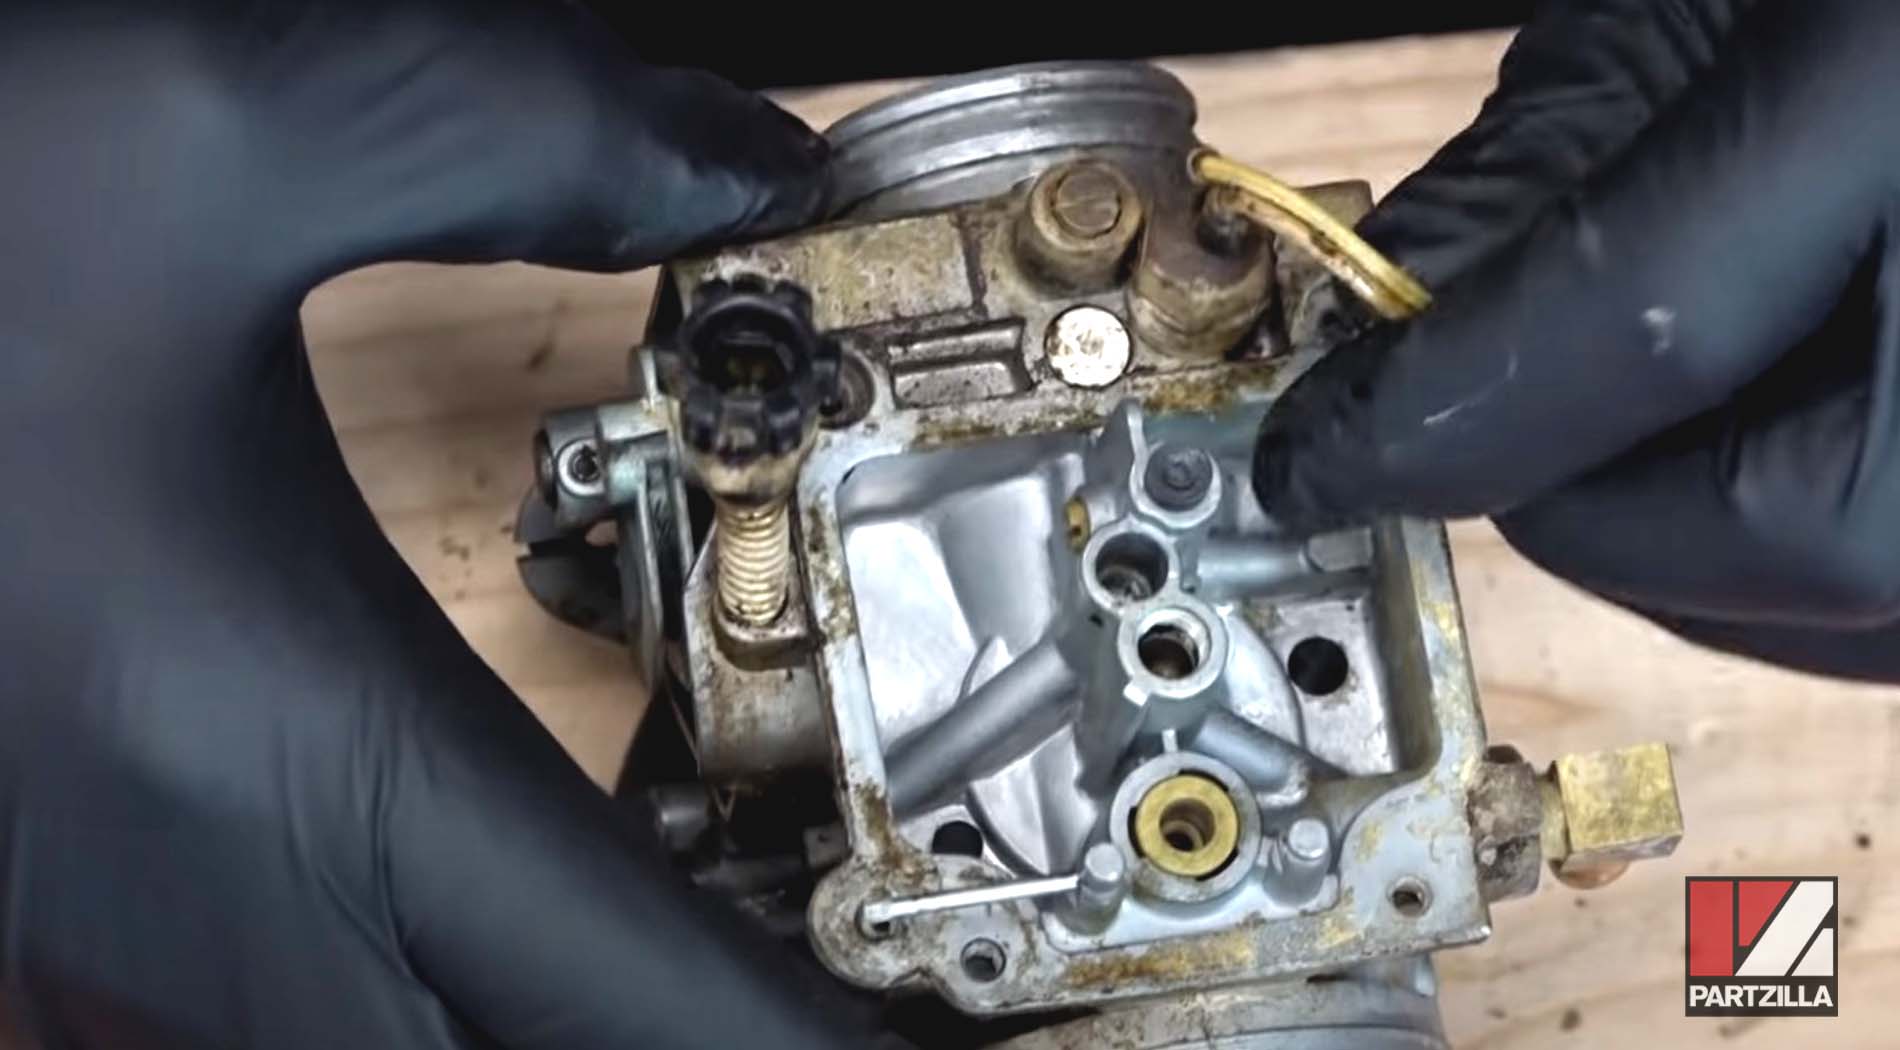 Honda Rancher TRX350 carburetor rebuild